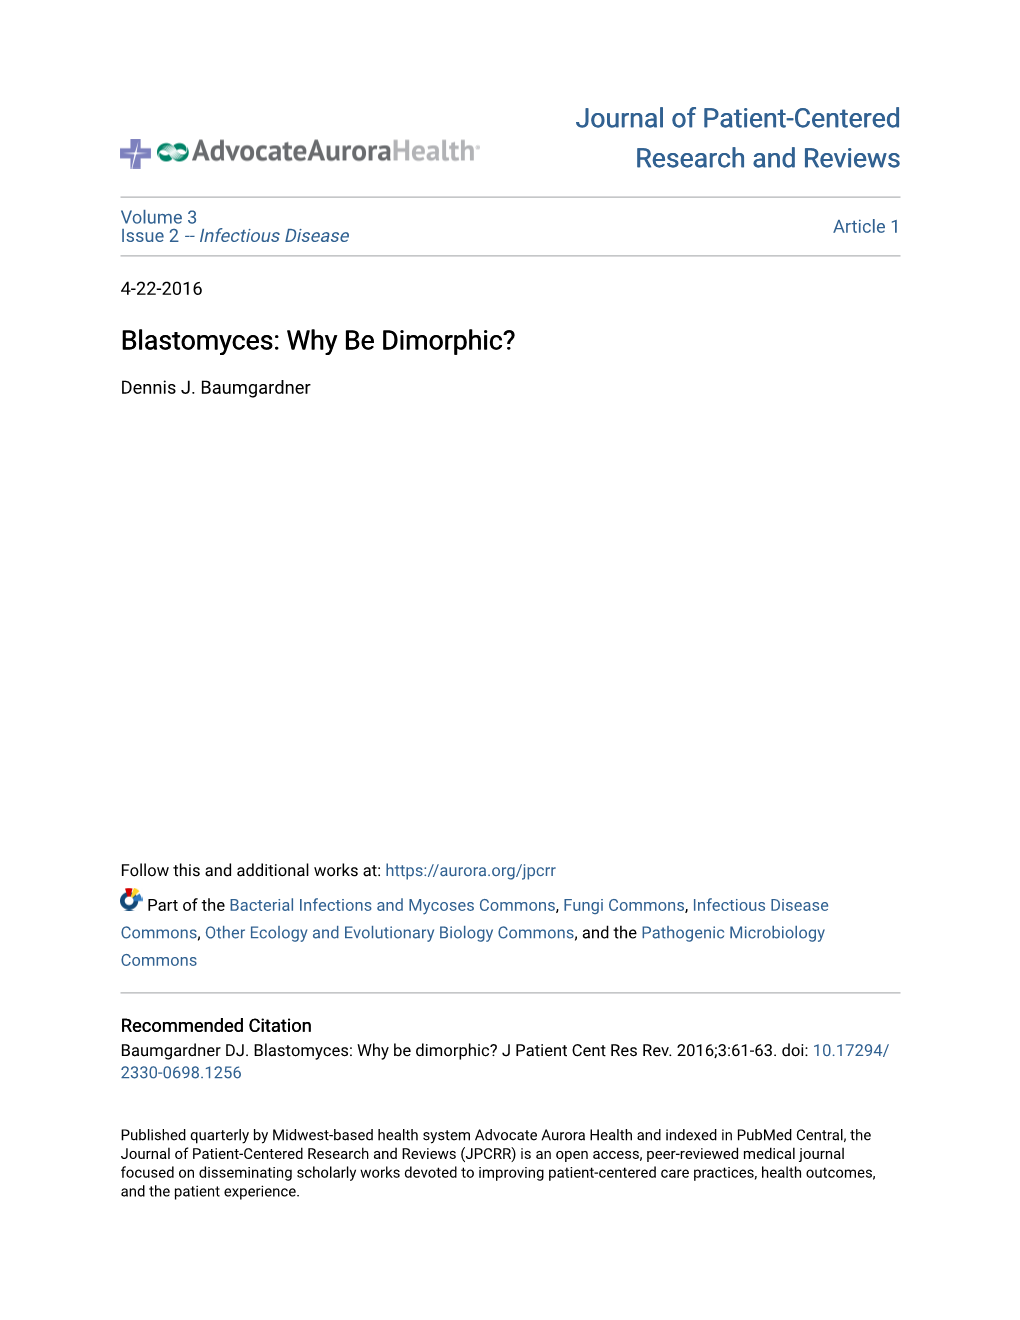 Blastomyces: Why Be Dimorphic?